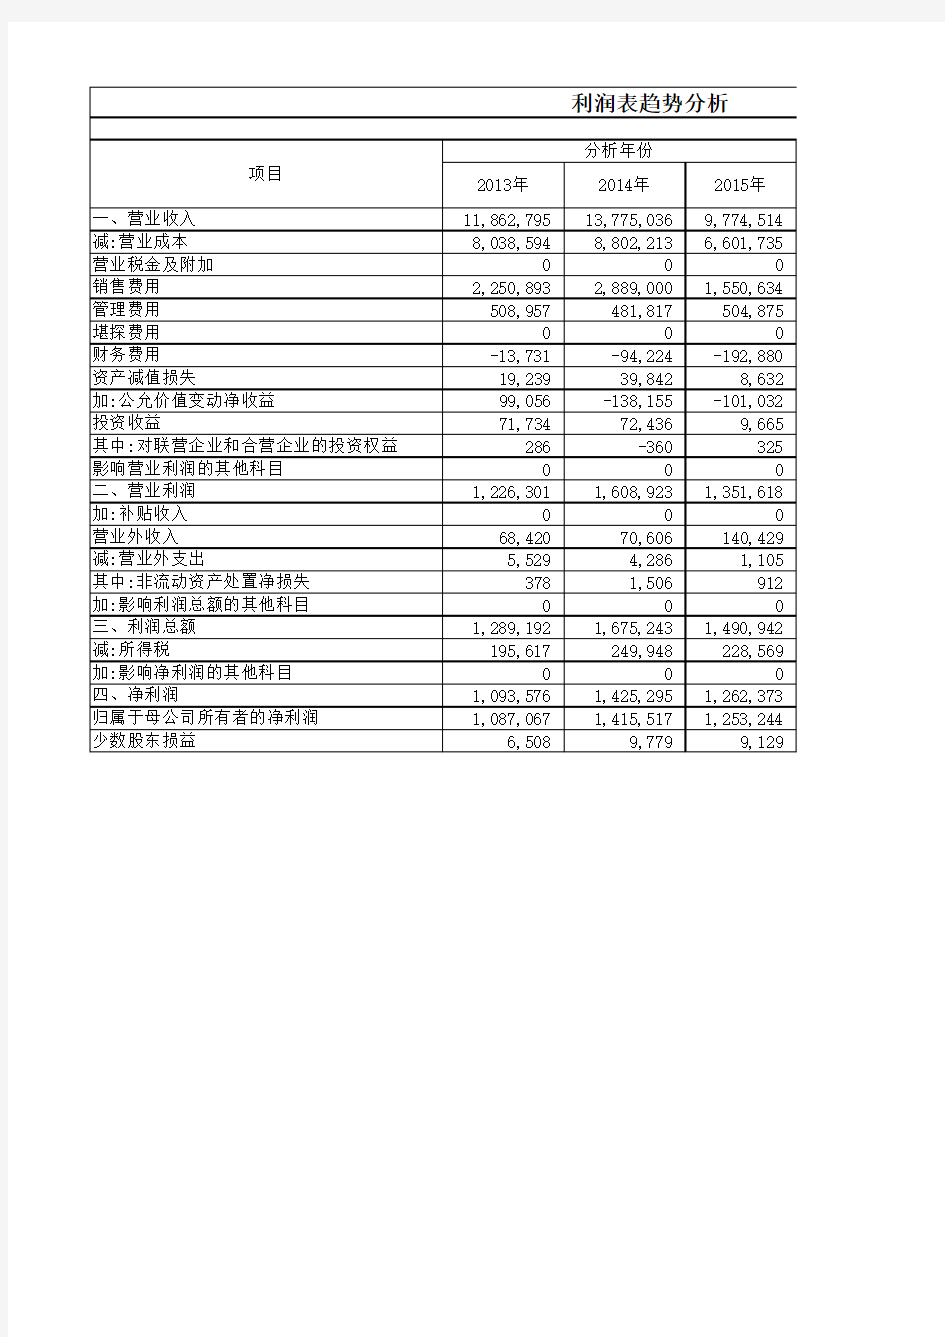 格力电器2013-2015年利润表分析